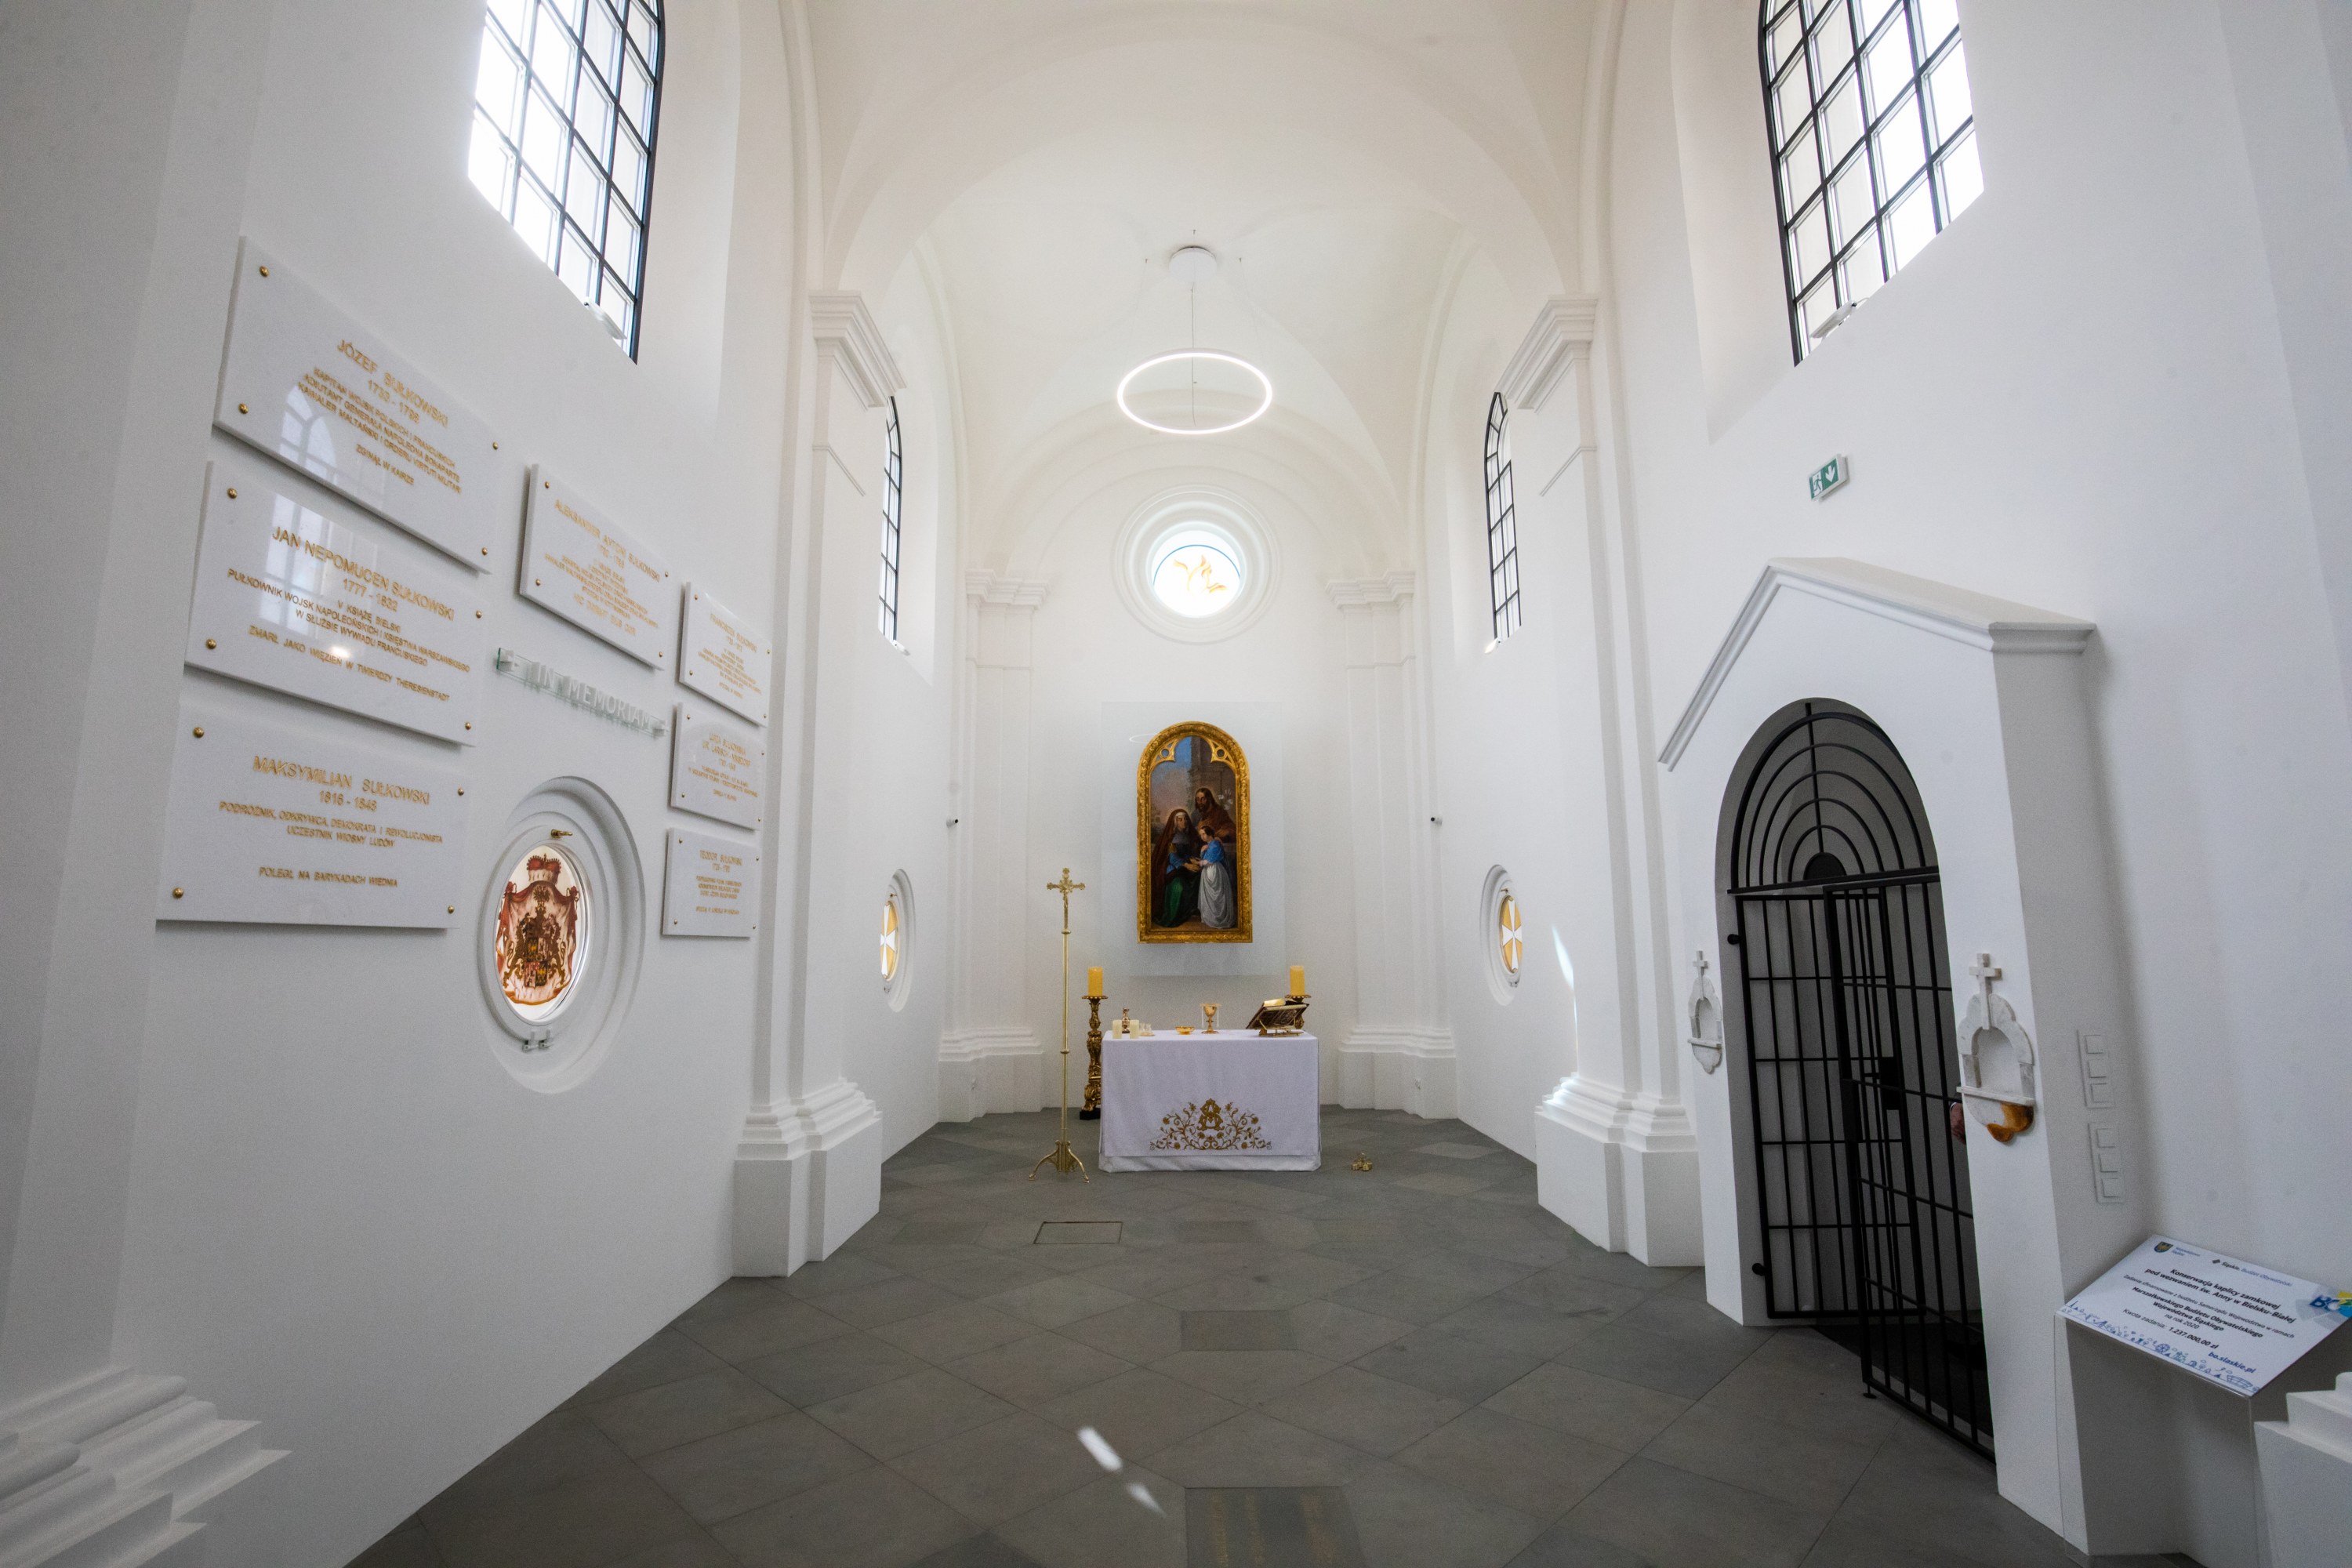  Wnętrze kaplicy św. Anny, fot. Paweł Sowa Na zdjęciu wnętrze kaplicy św. Anny